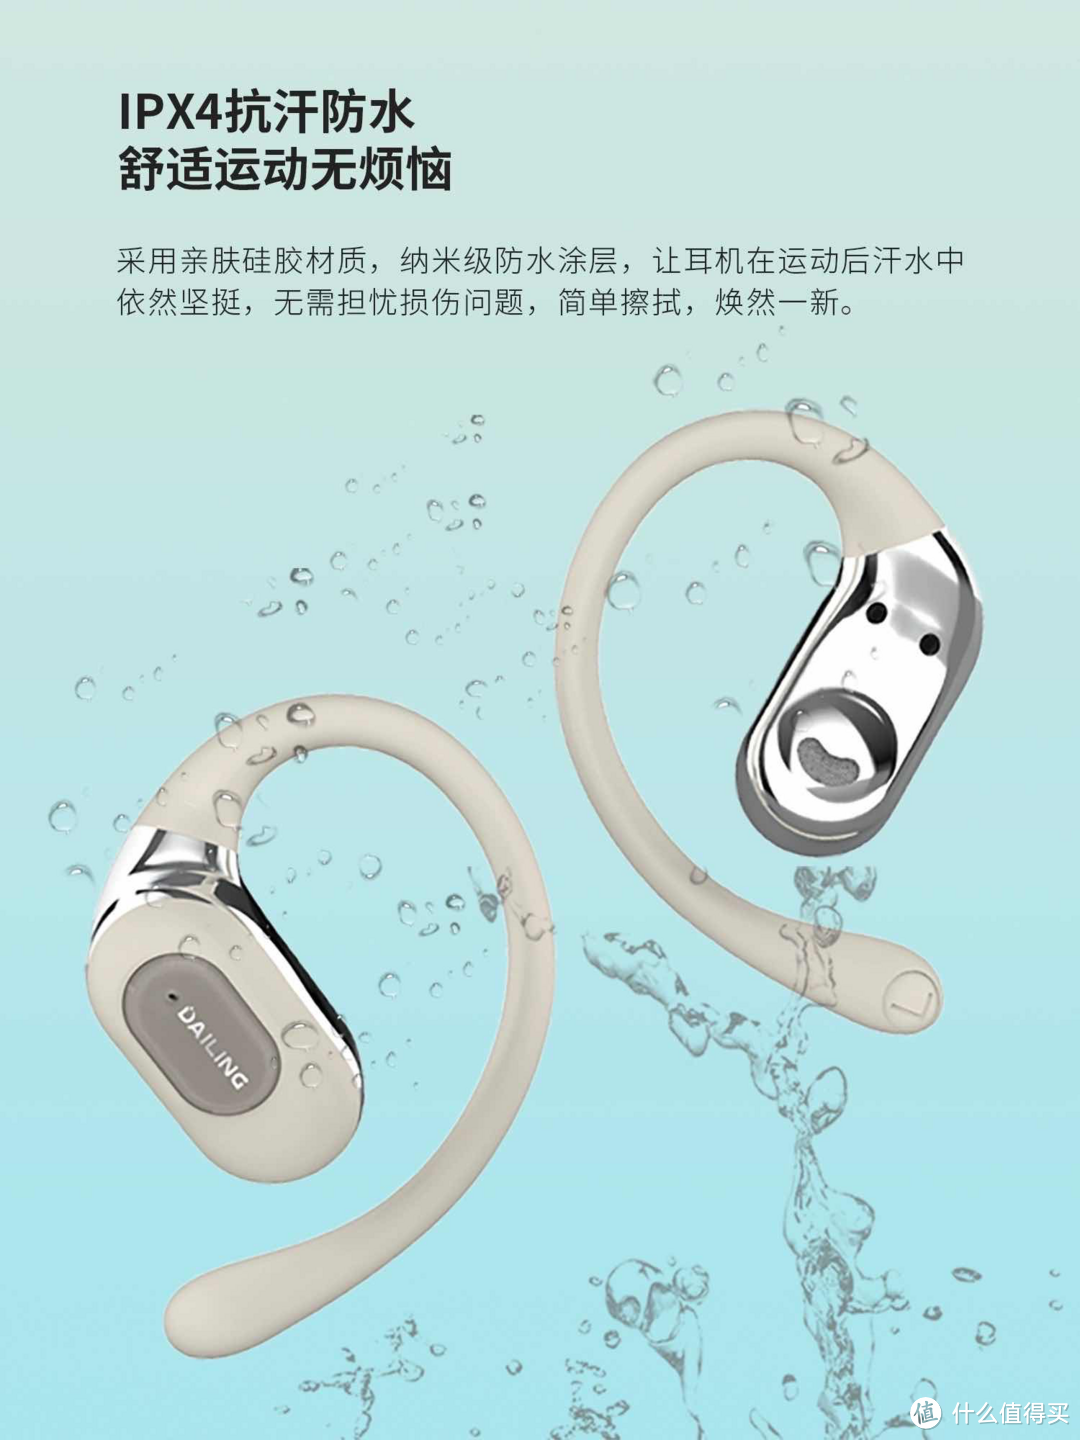 深度测评戴灵OS2开放式蓝牙耳机：百元享受高科技